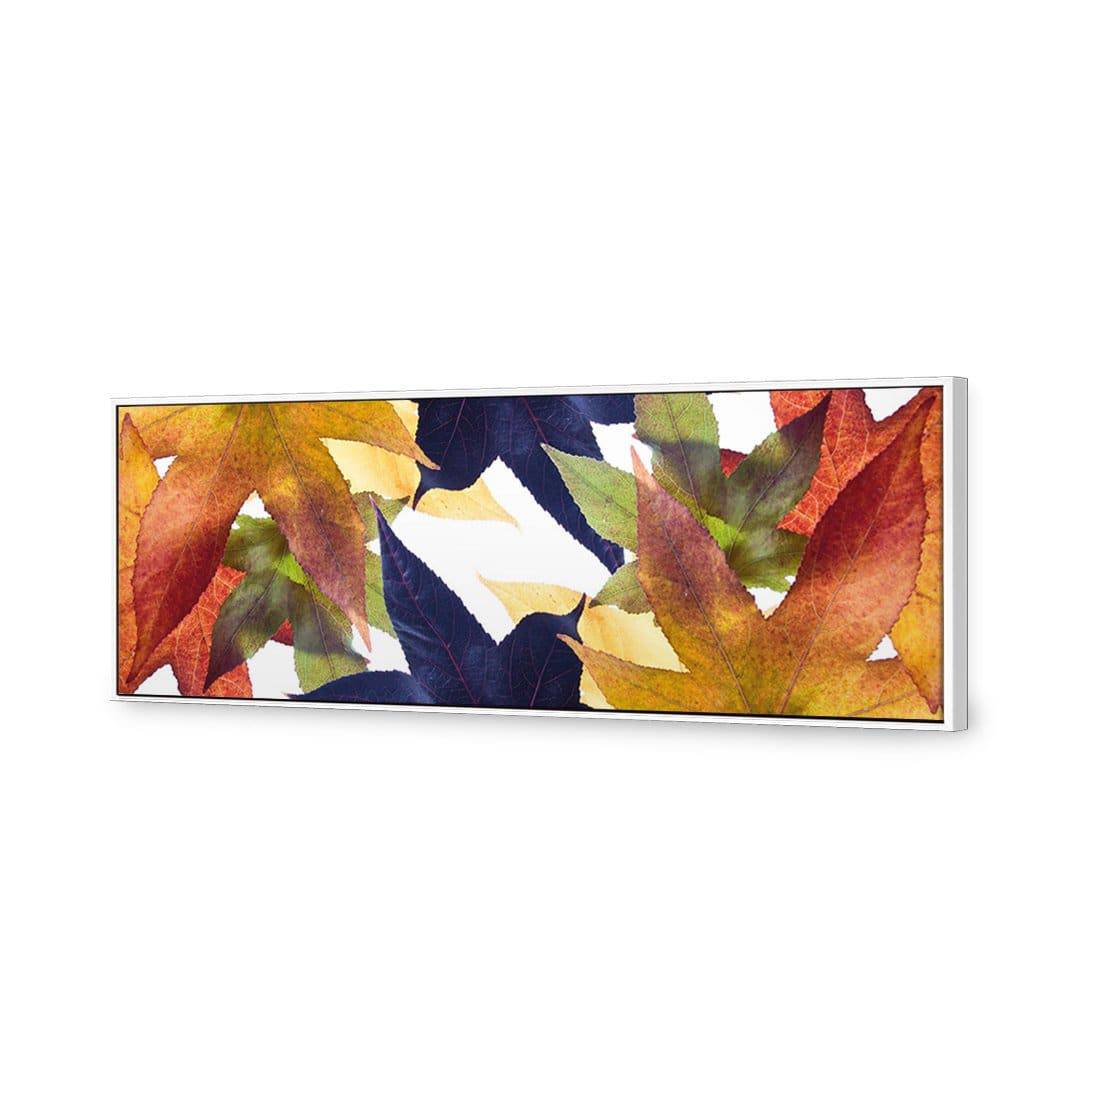 Leaf Kaleidoscope Canvas Art-Canvas-Wall Art Designs-60x20cm-Canvas - White Frame-Wall Art Designs